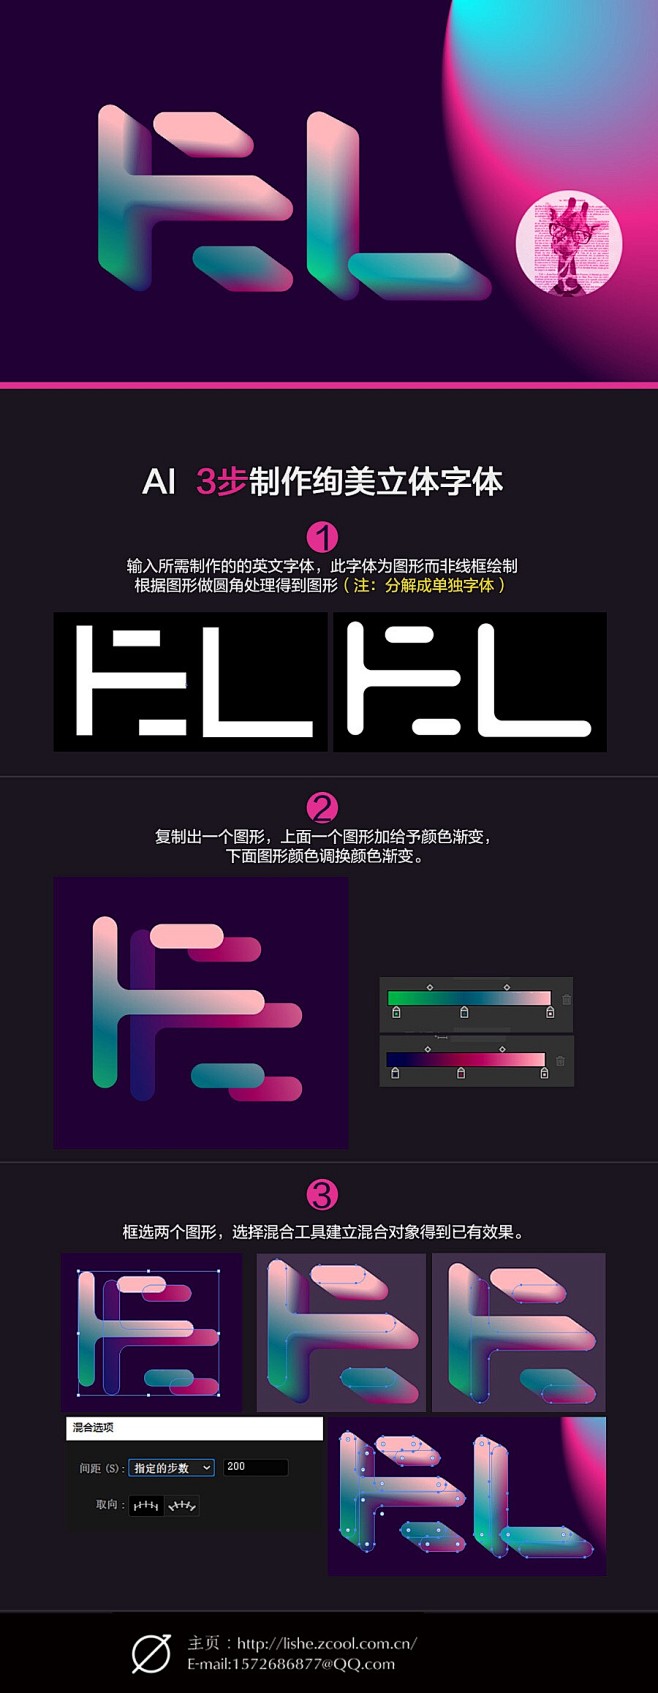 混合工具之色彩图形应用-字体传奇网-中国...